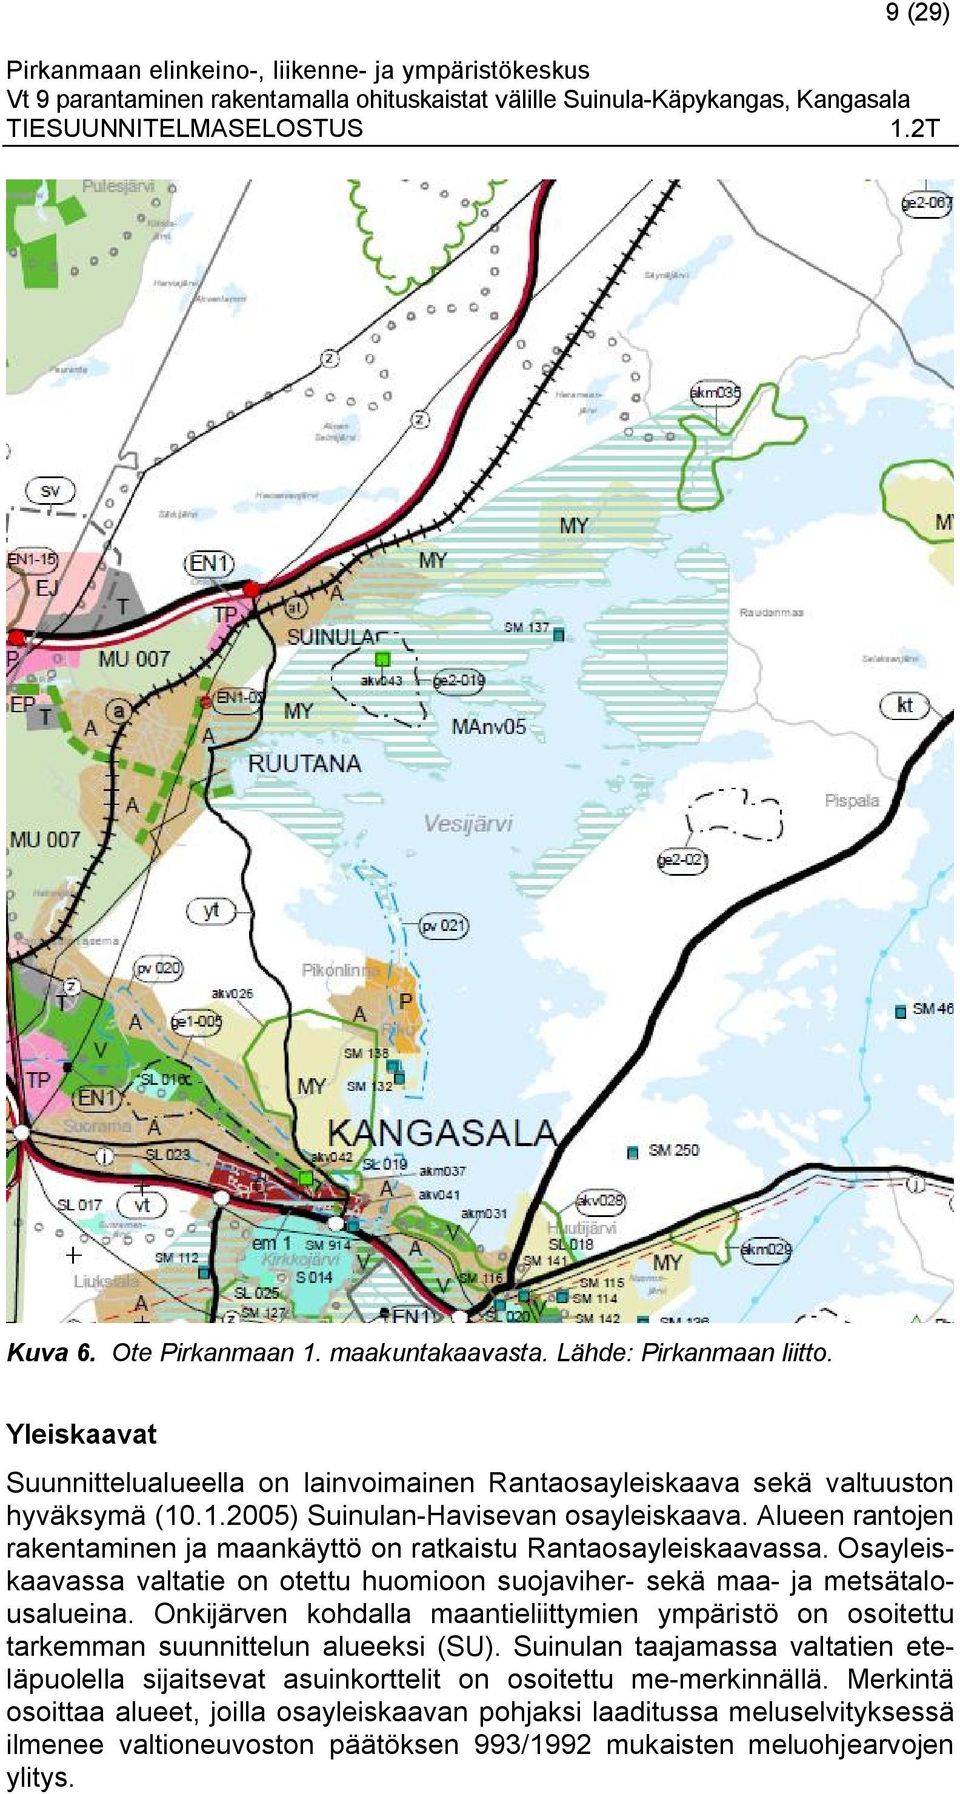 Onkijärven kohdalla maantieliittymien ympäristö on osoitettu tarkemman suunnittelun alueeksi (SU).